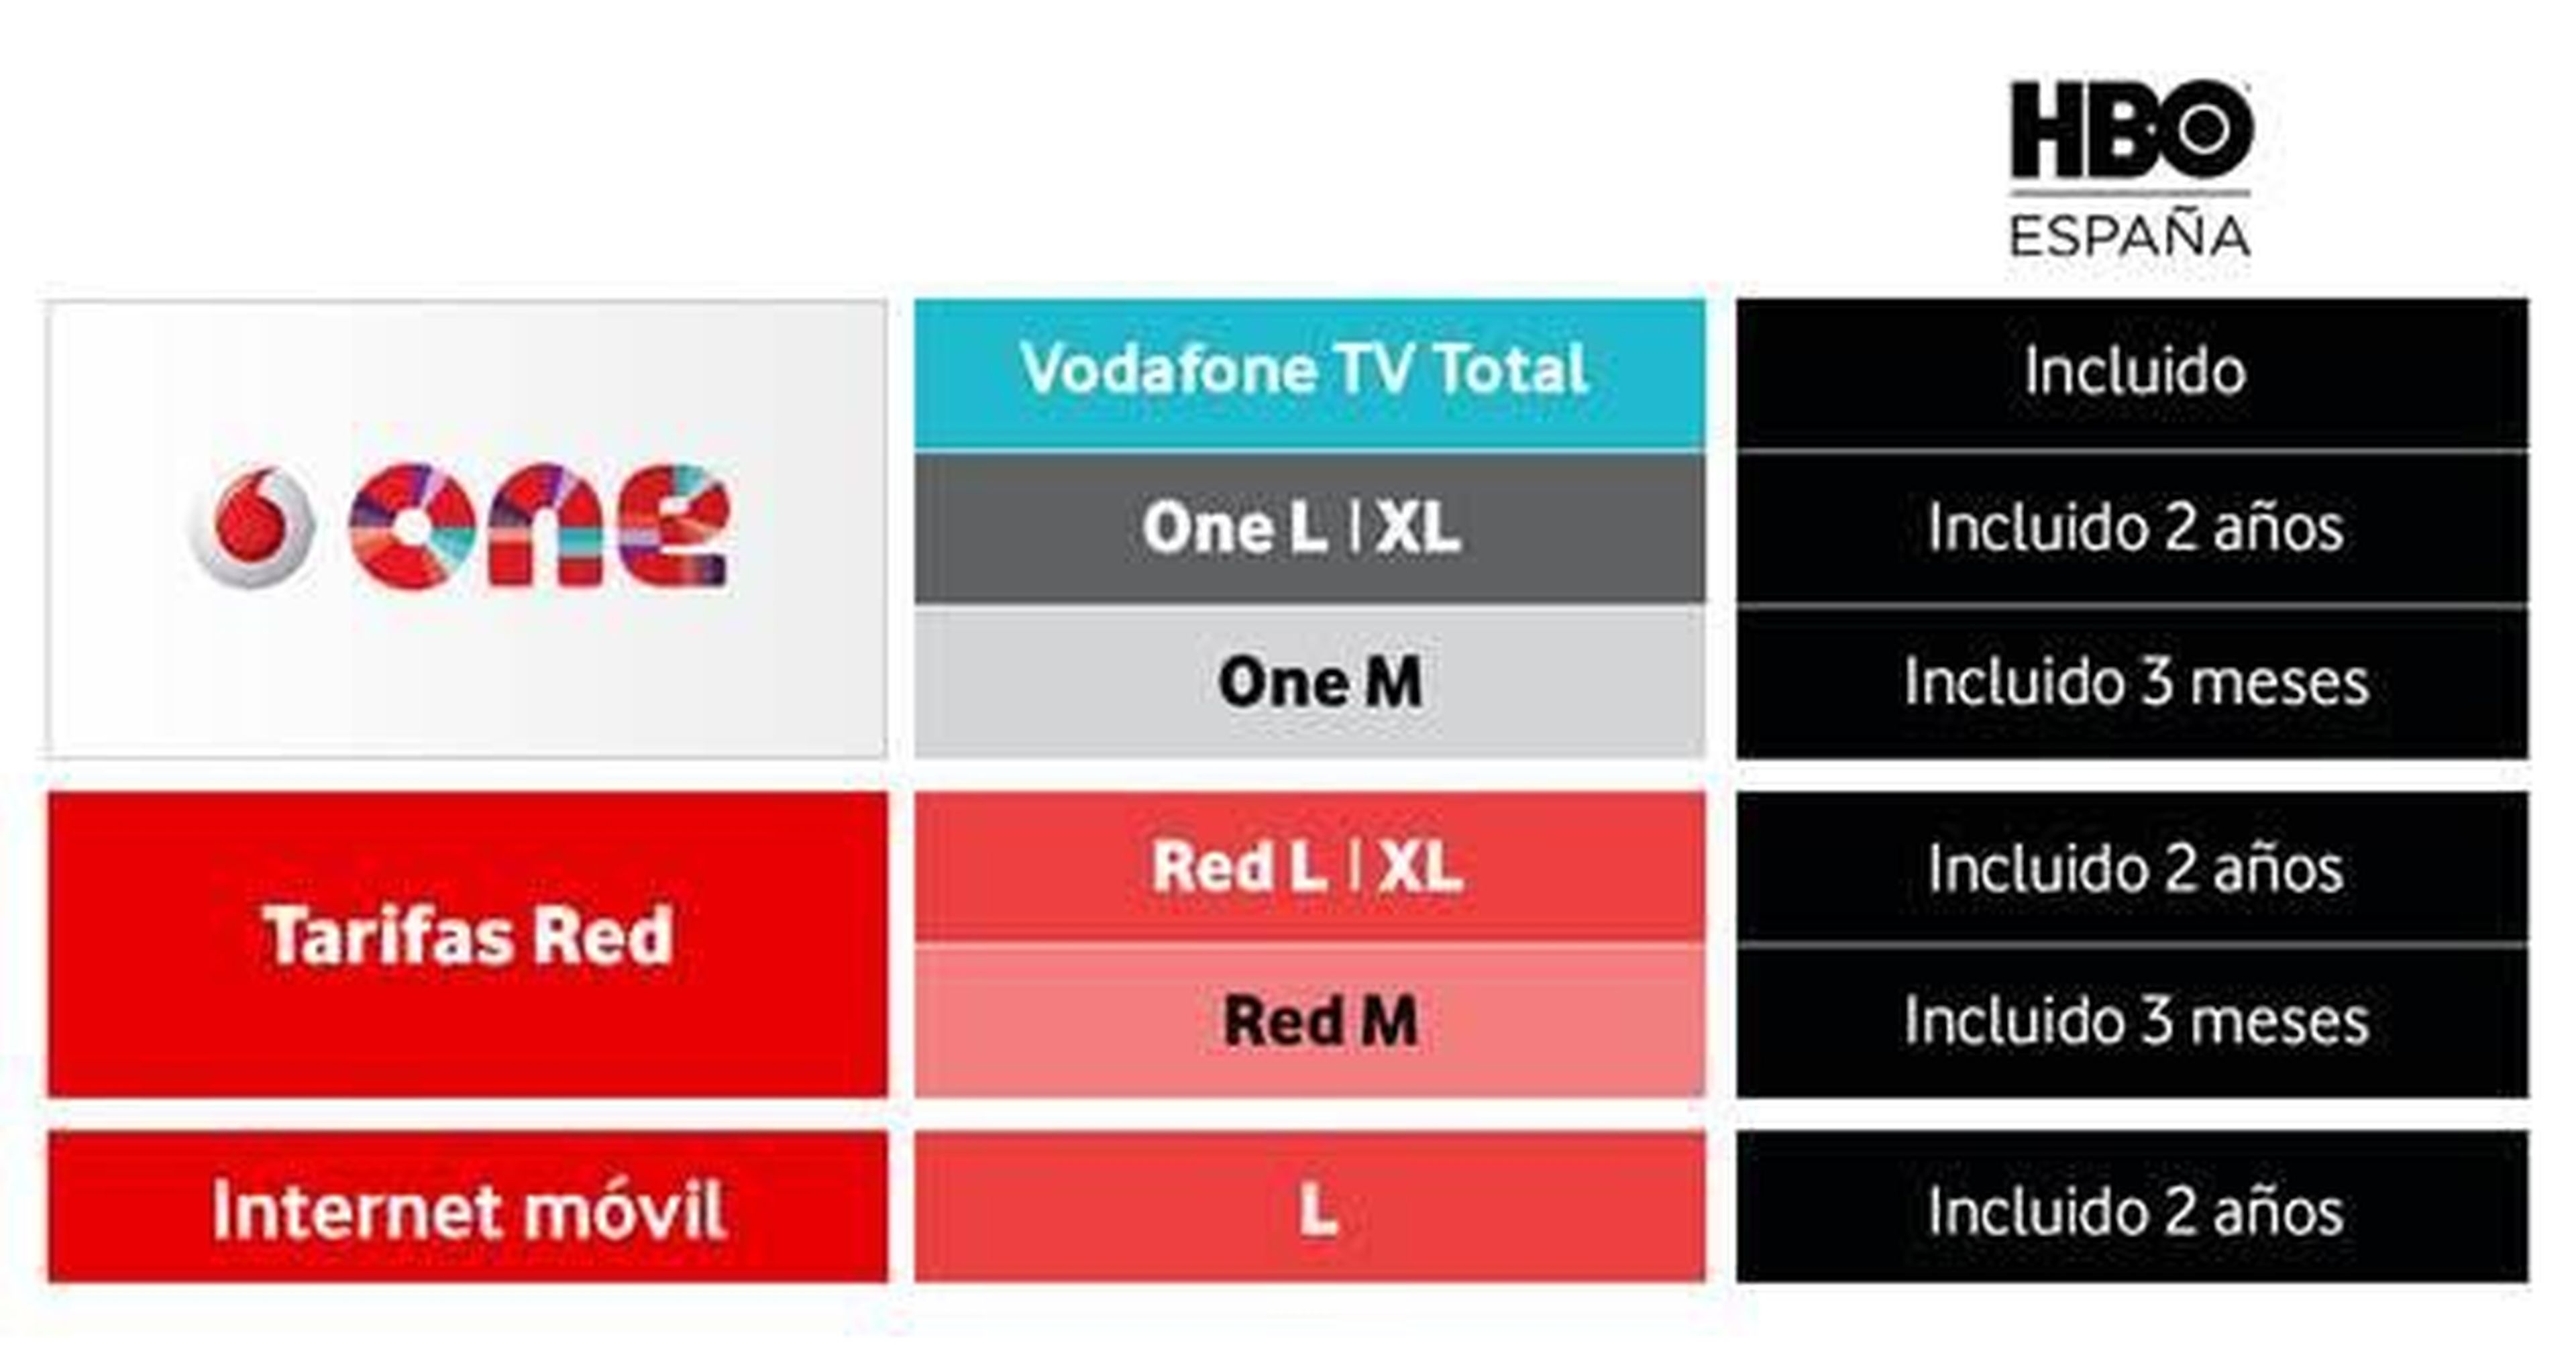 Vodafone HBO España